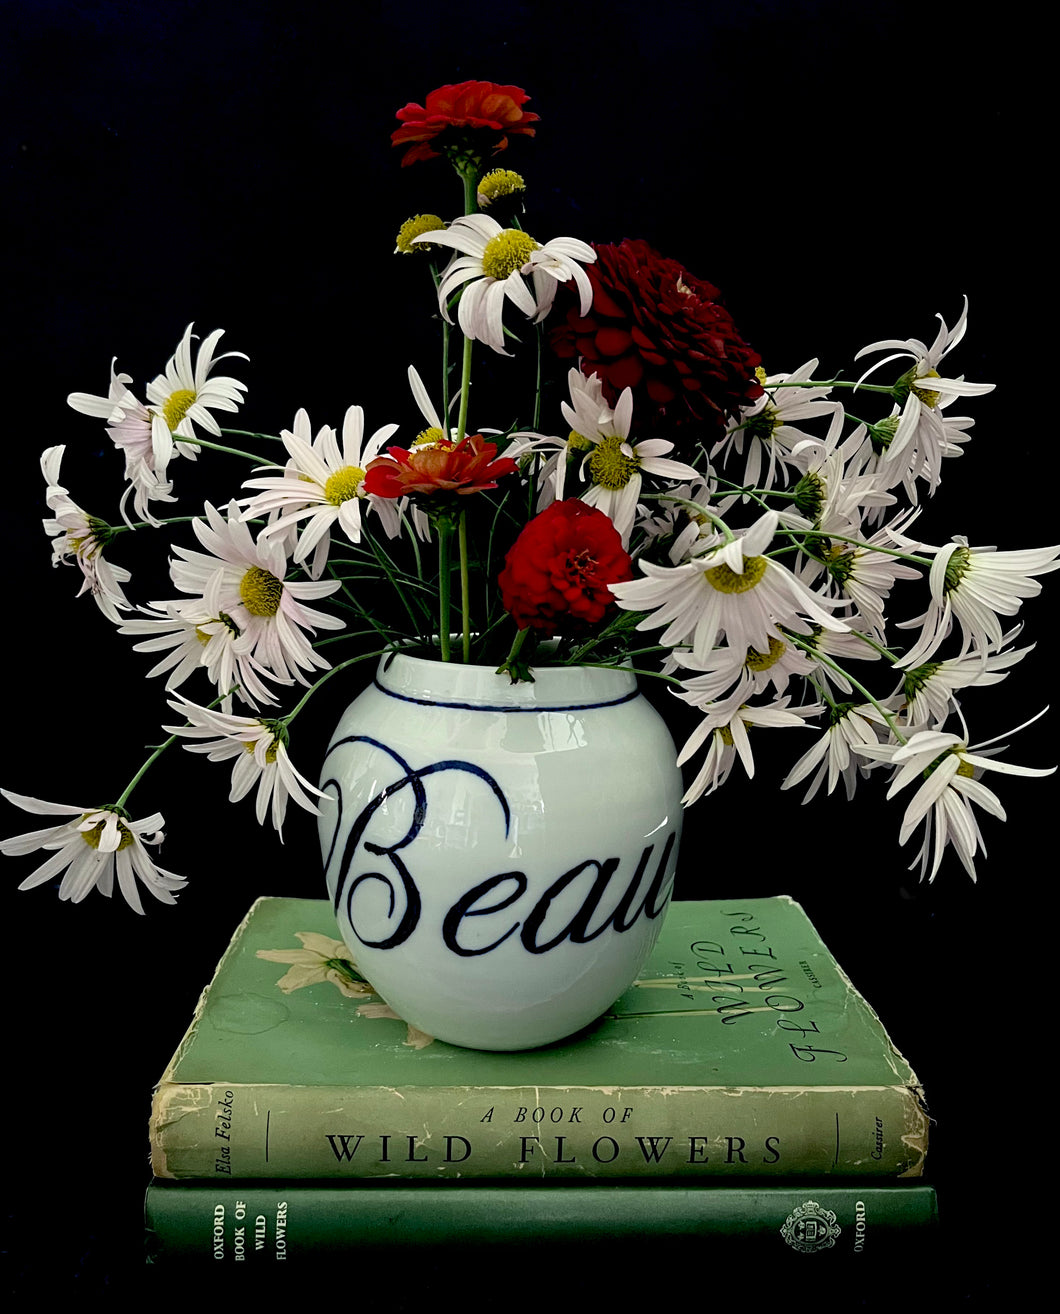 Fine English porcelain beauteous vase